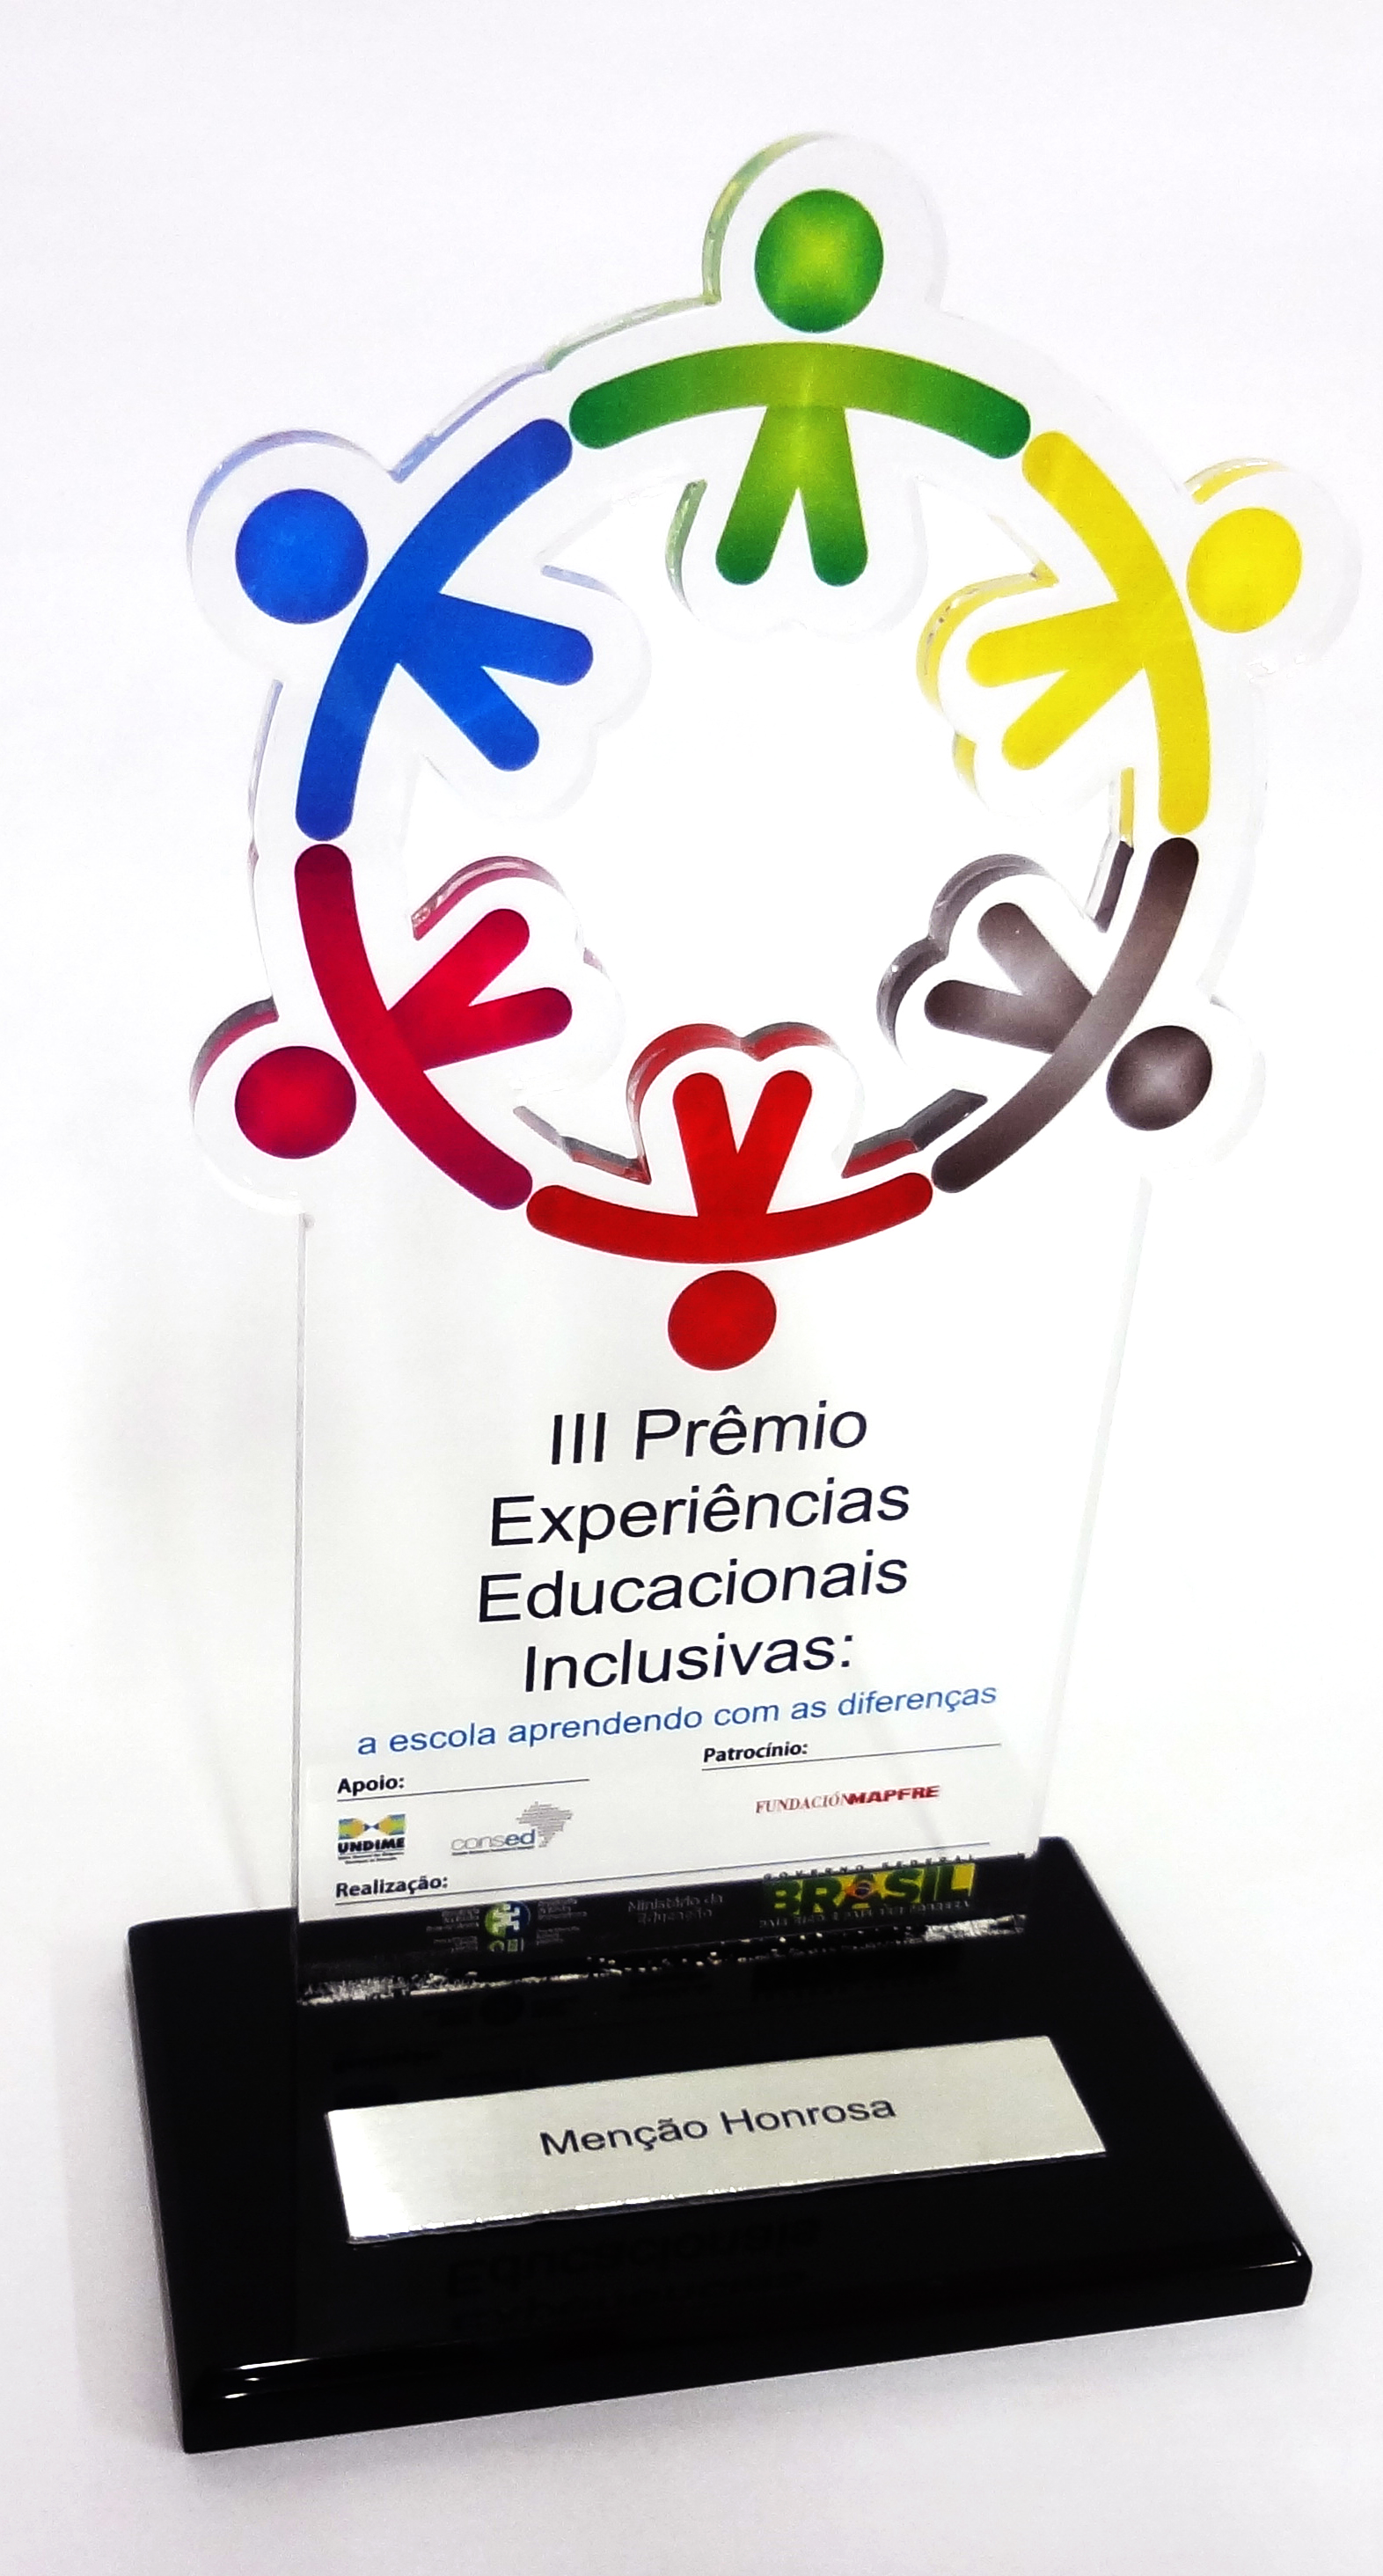 Troféu do prêmio em acrílico, com símbolos coloridos de pessoas de mãos dadas formando um círculo. Em sua base, uma placa com a descrição “Menção Honrosa”.